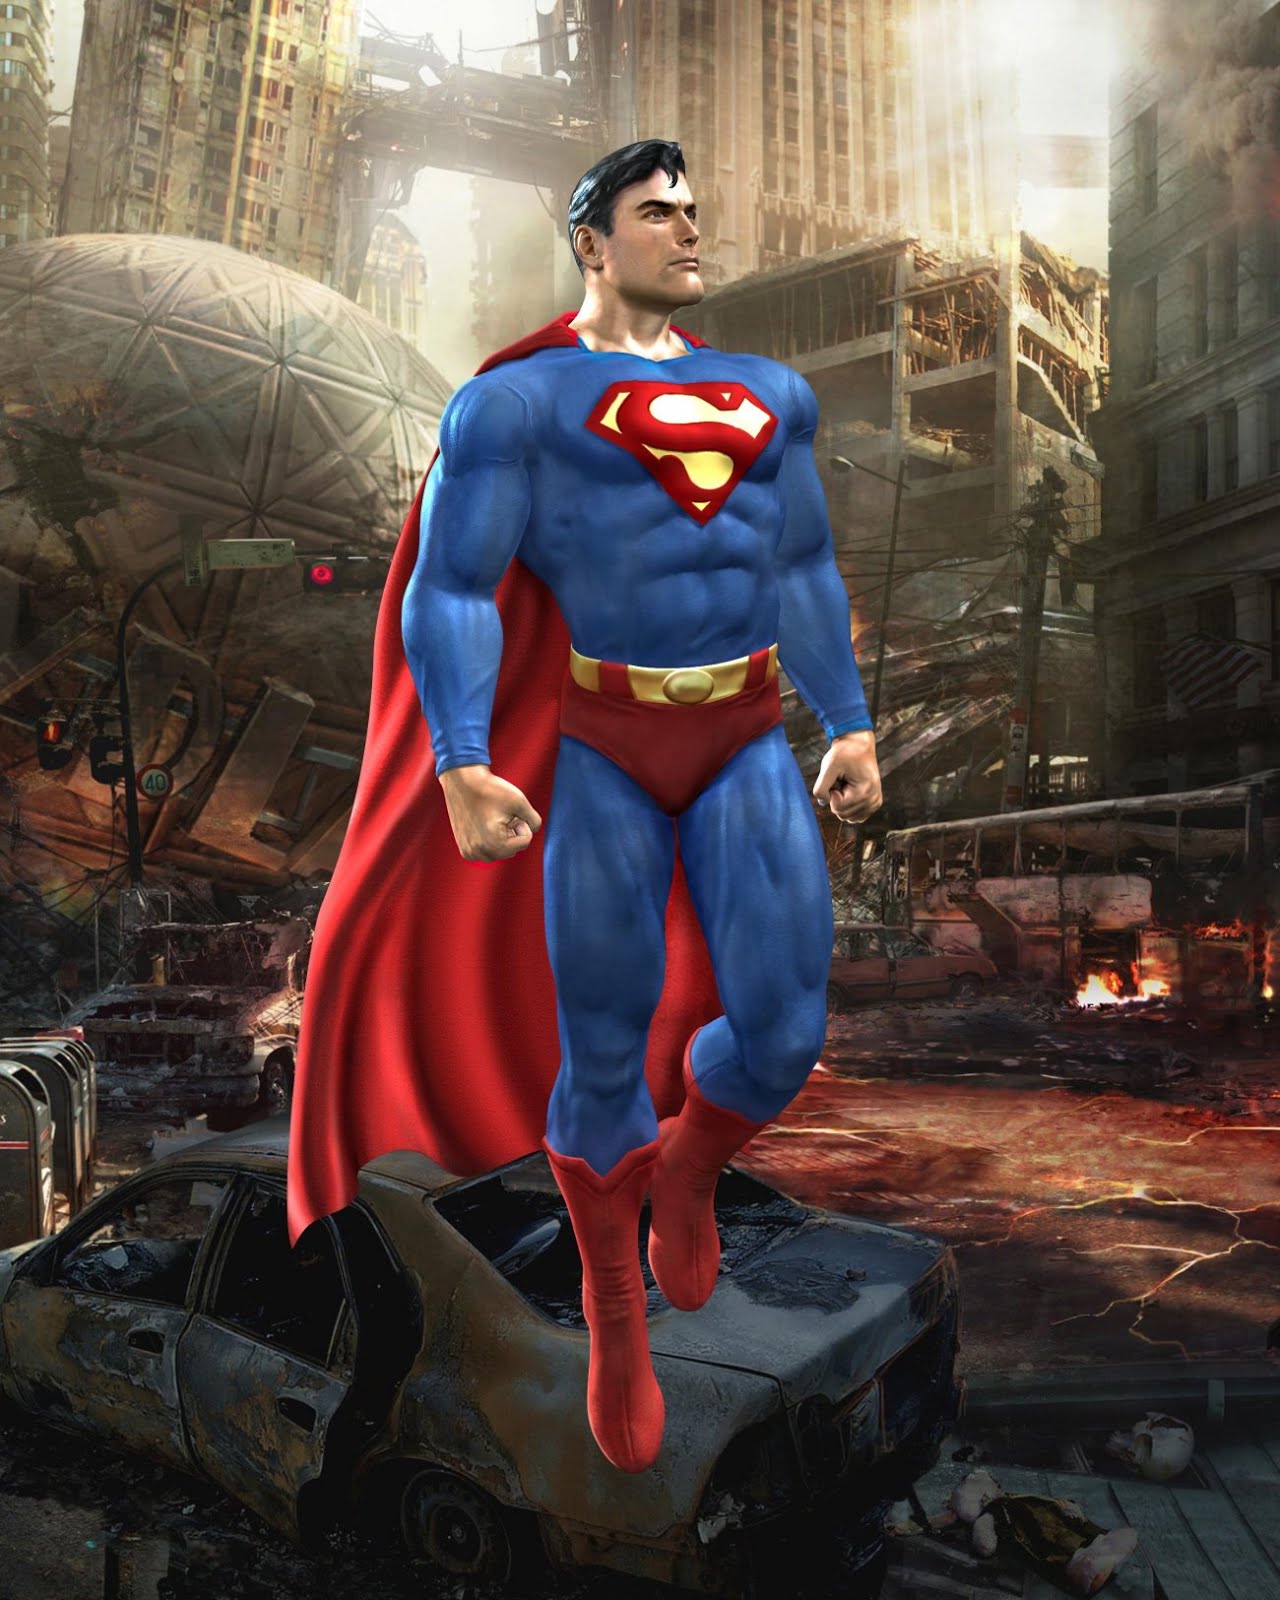 superhero wallpaper hd,superhombre,superhéroe,personaje de ficción,héroe,figura de acción